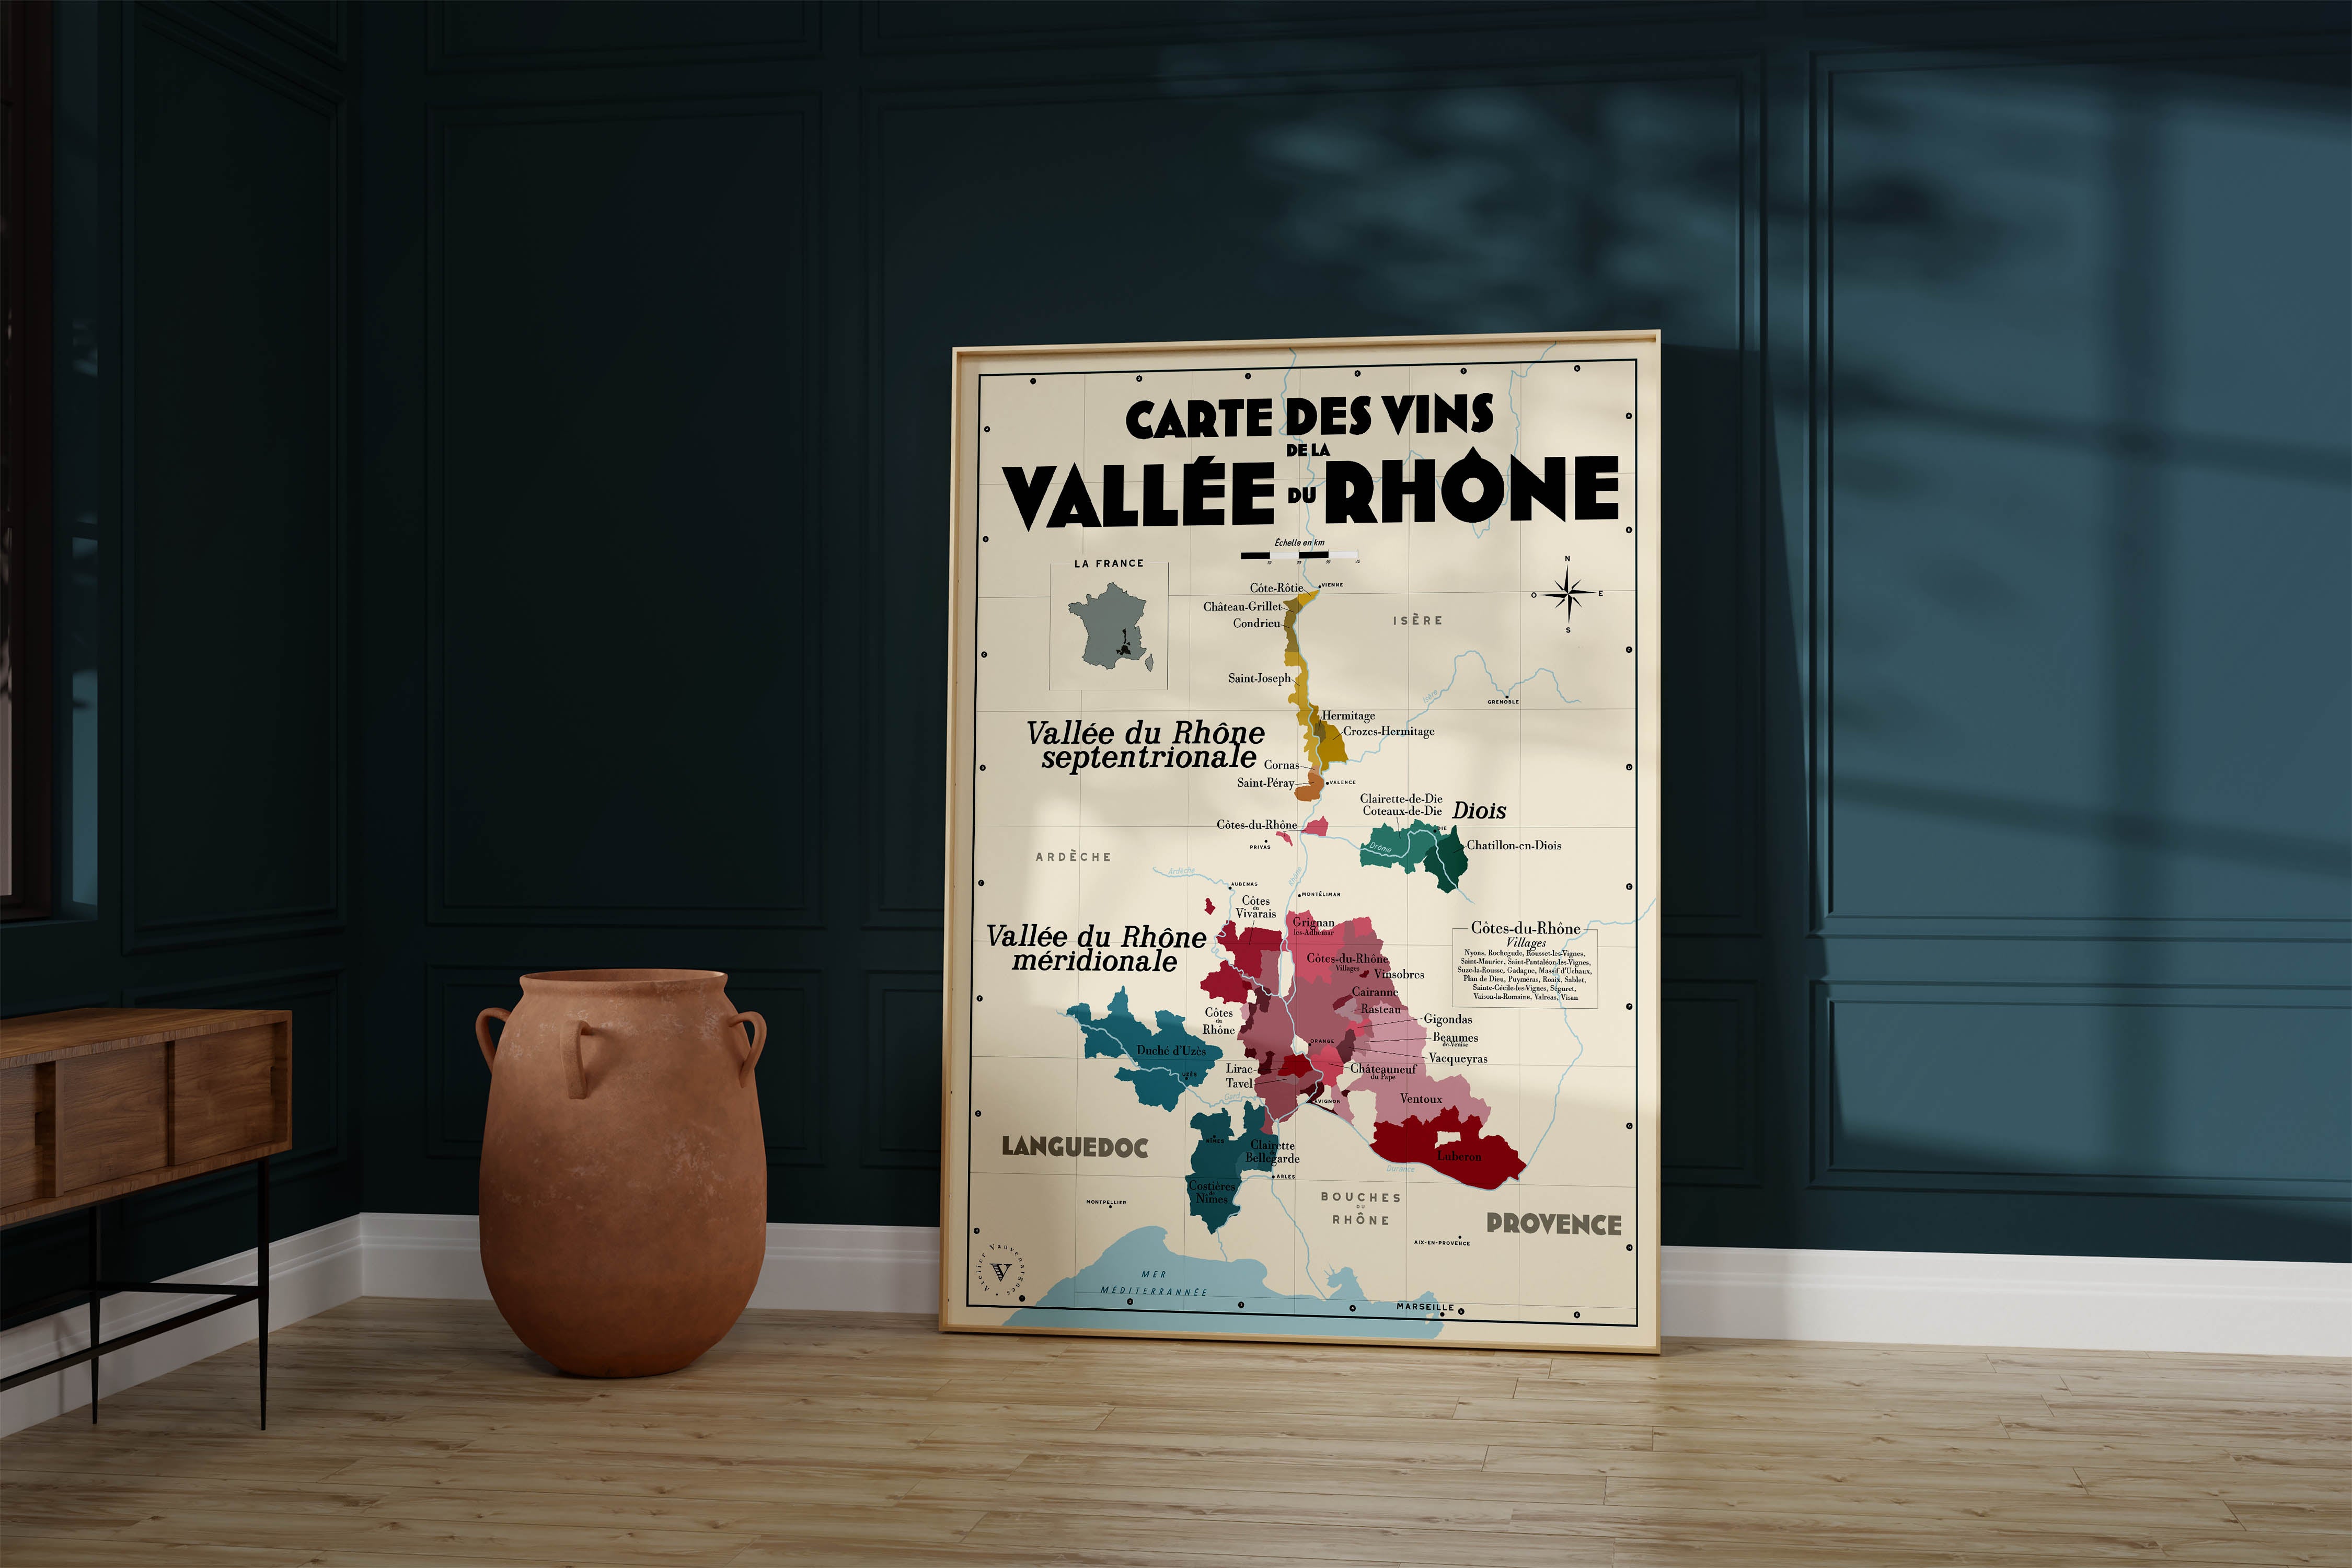 Carte des vins de la Vallée du Rhône